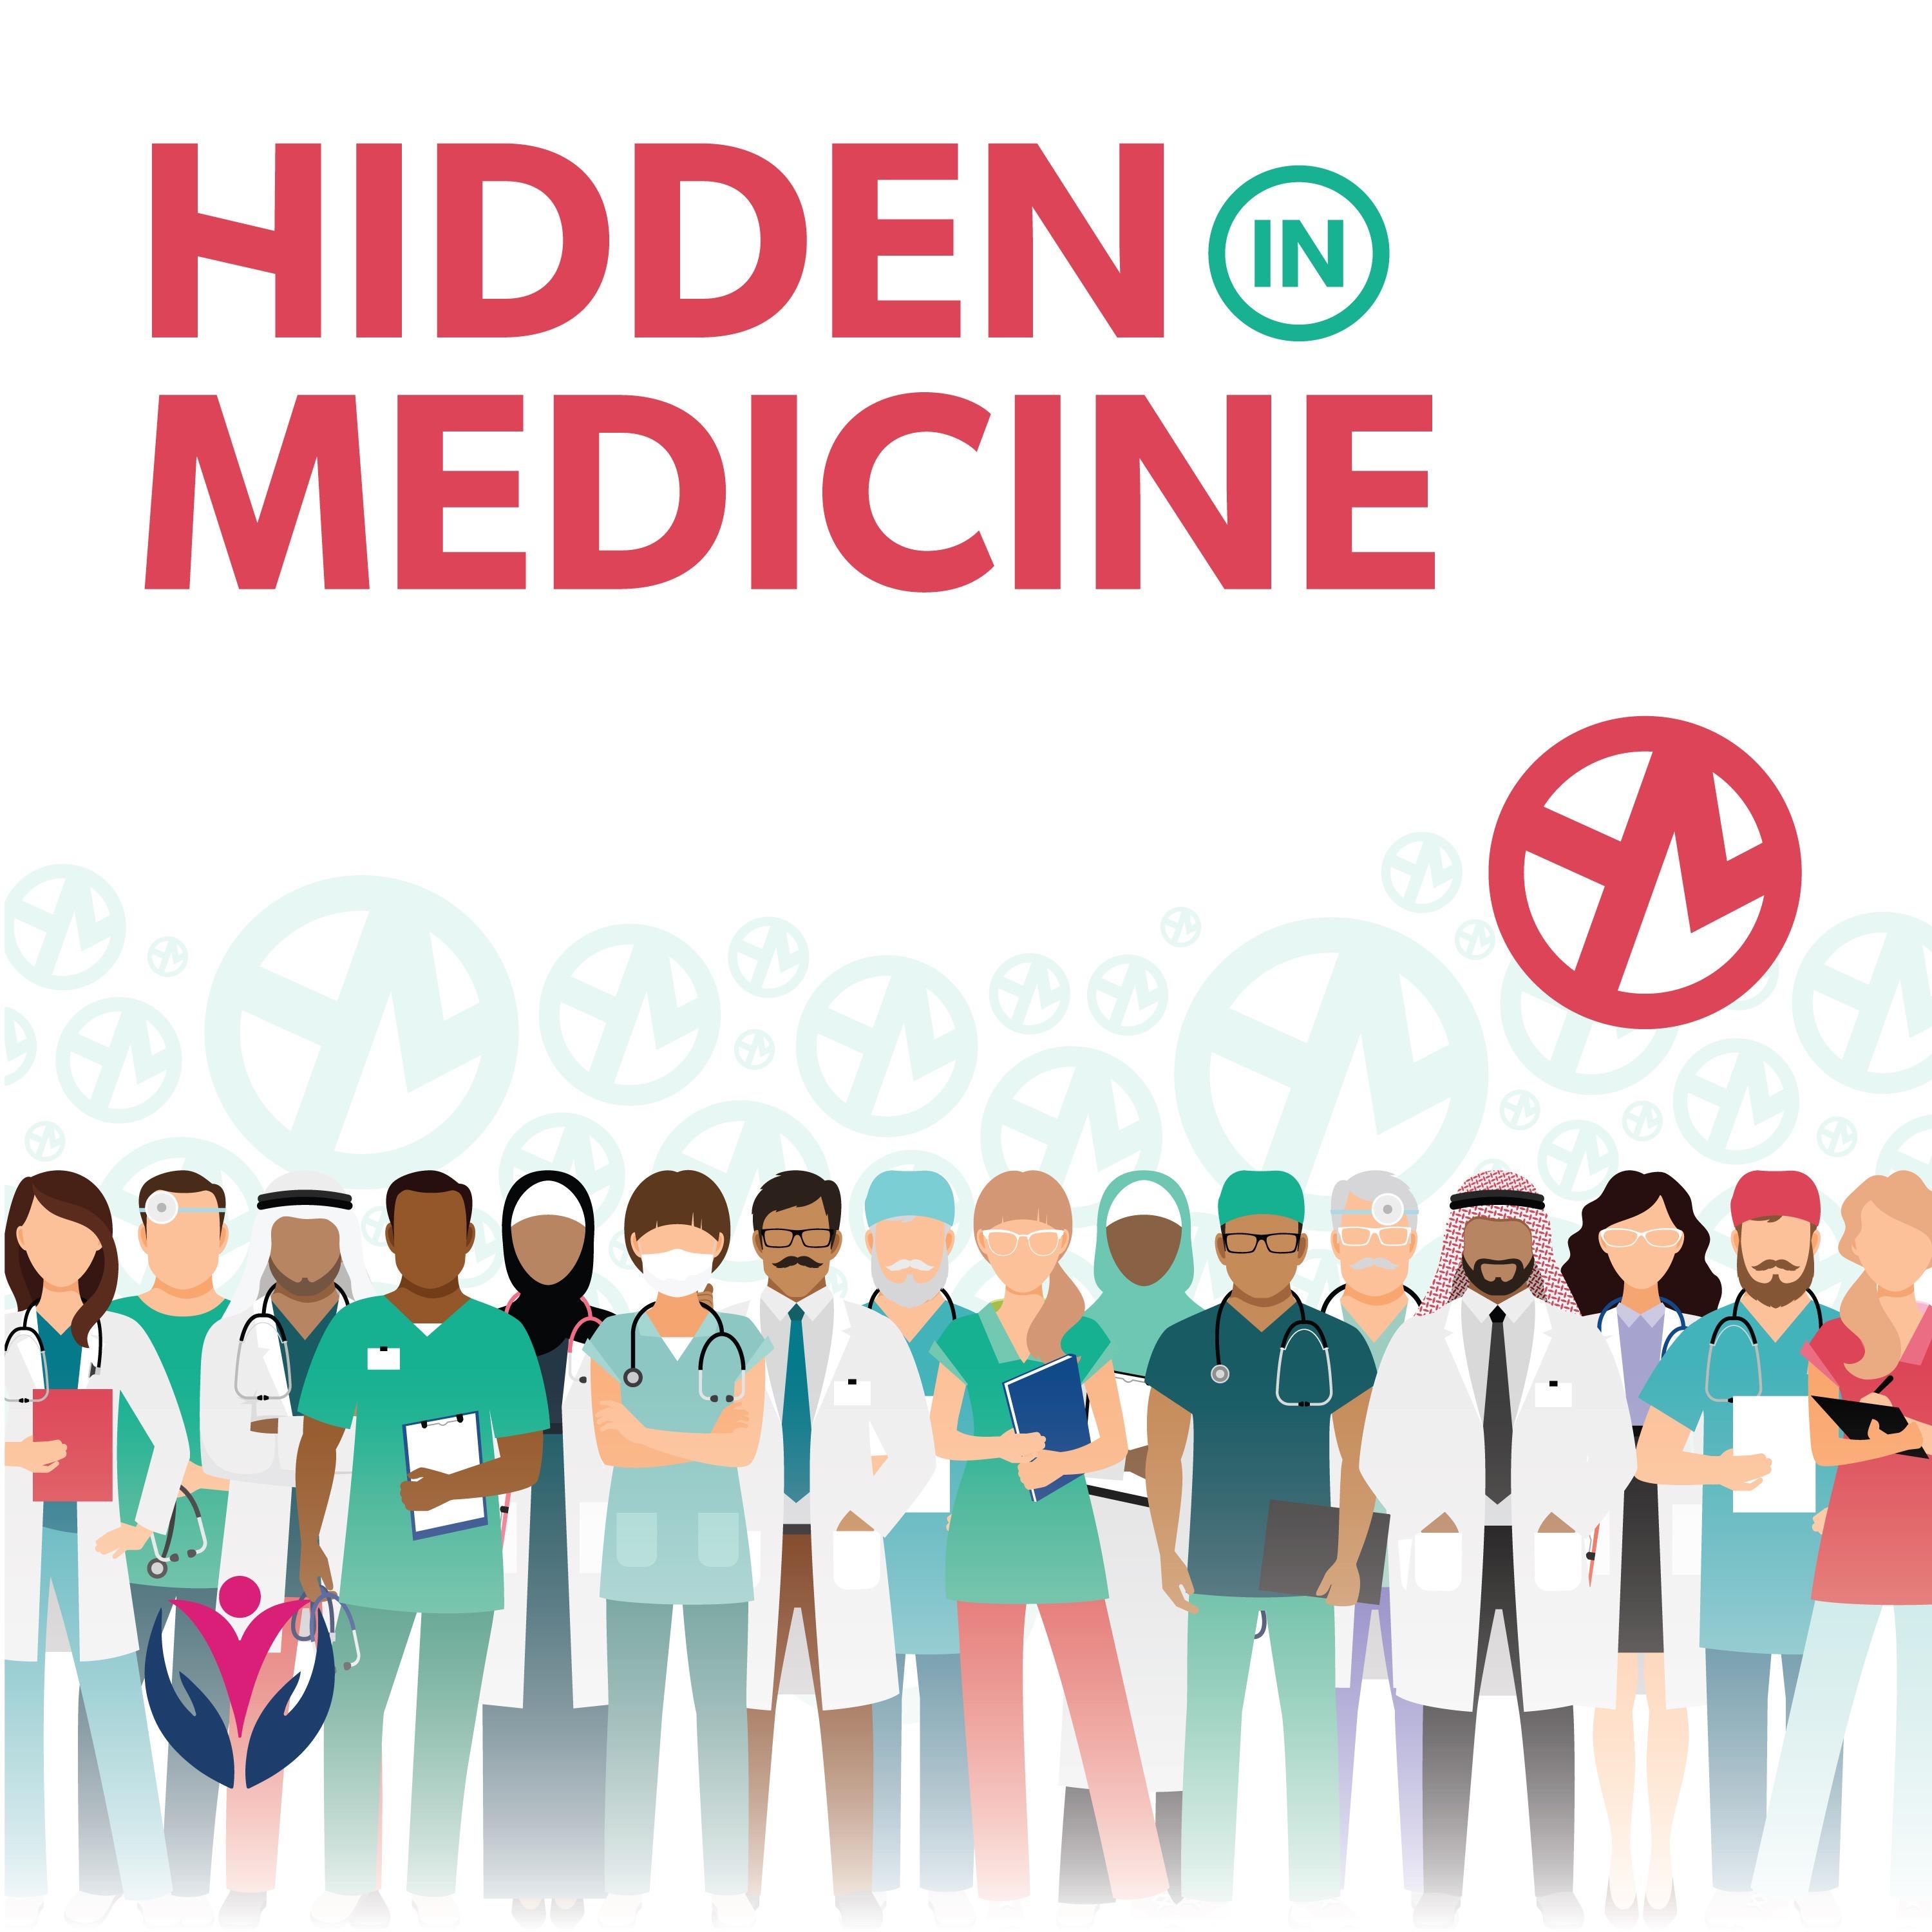 Hidden in Medicine